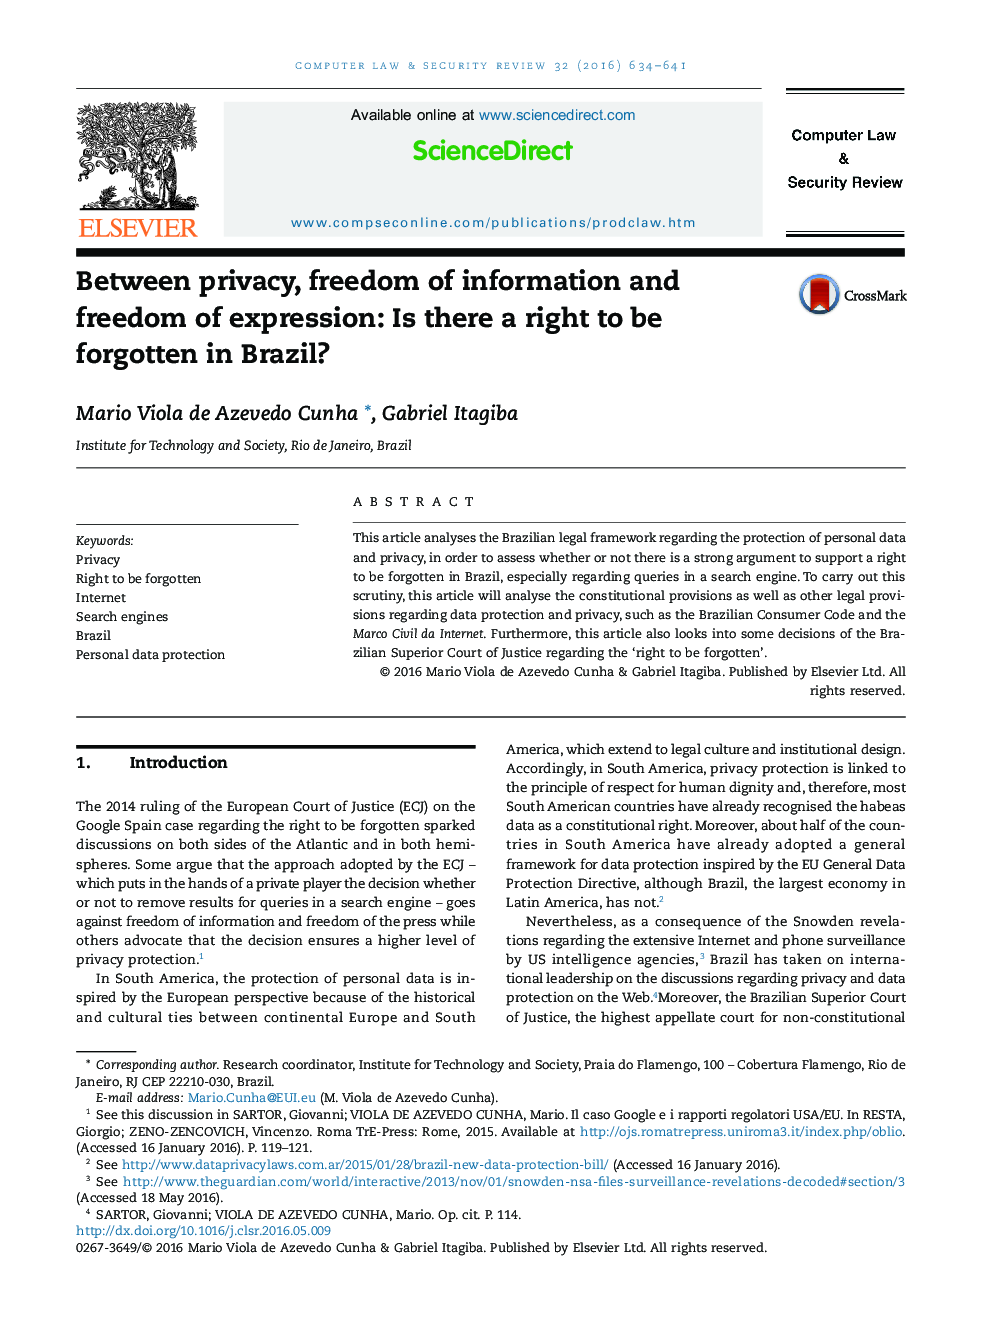 بین حریم خصوصی، آزادی اطلاعات و آزادی بیان: آیا حق فراموشی در برزیل وجود دارد؟